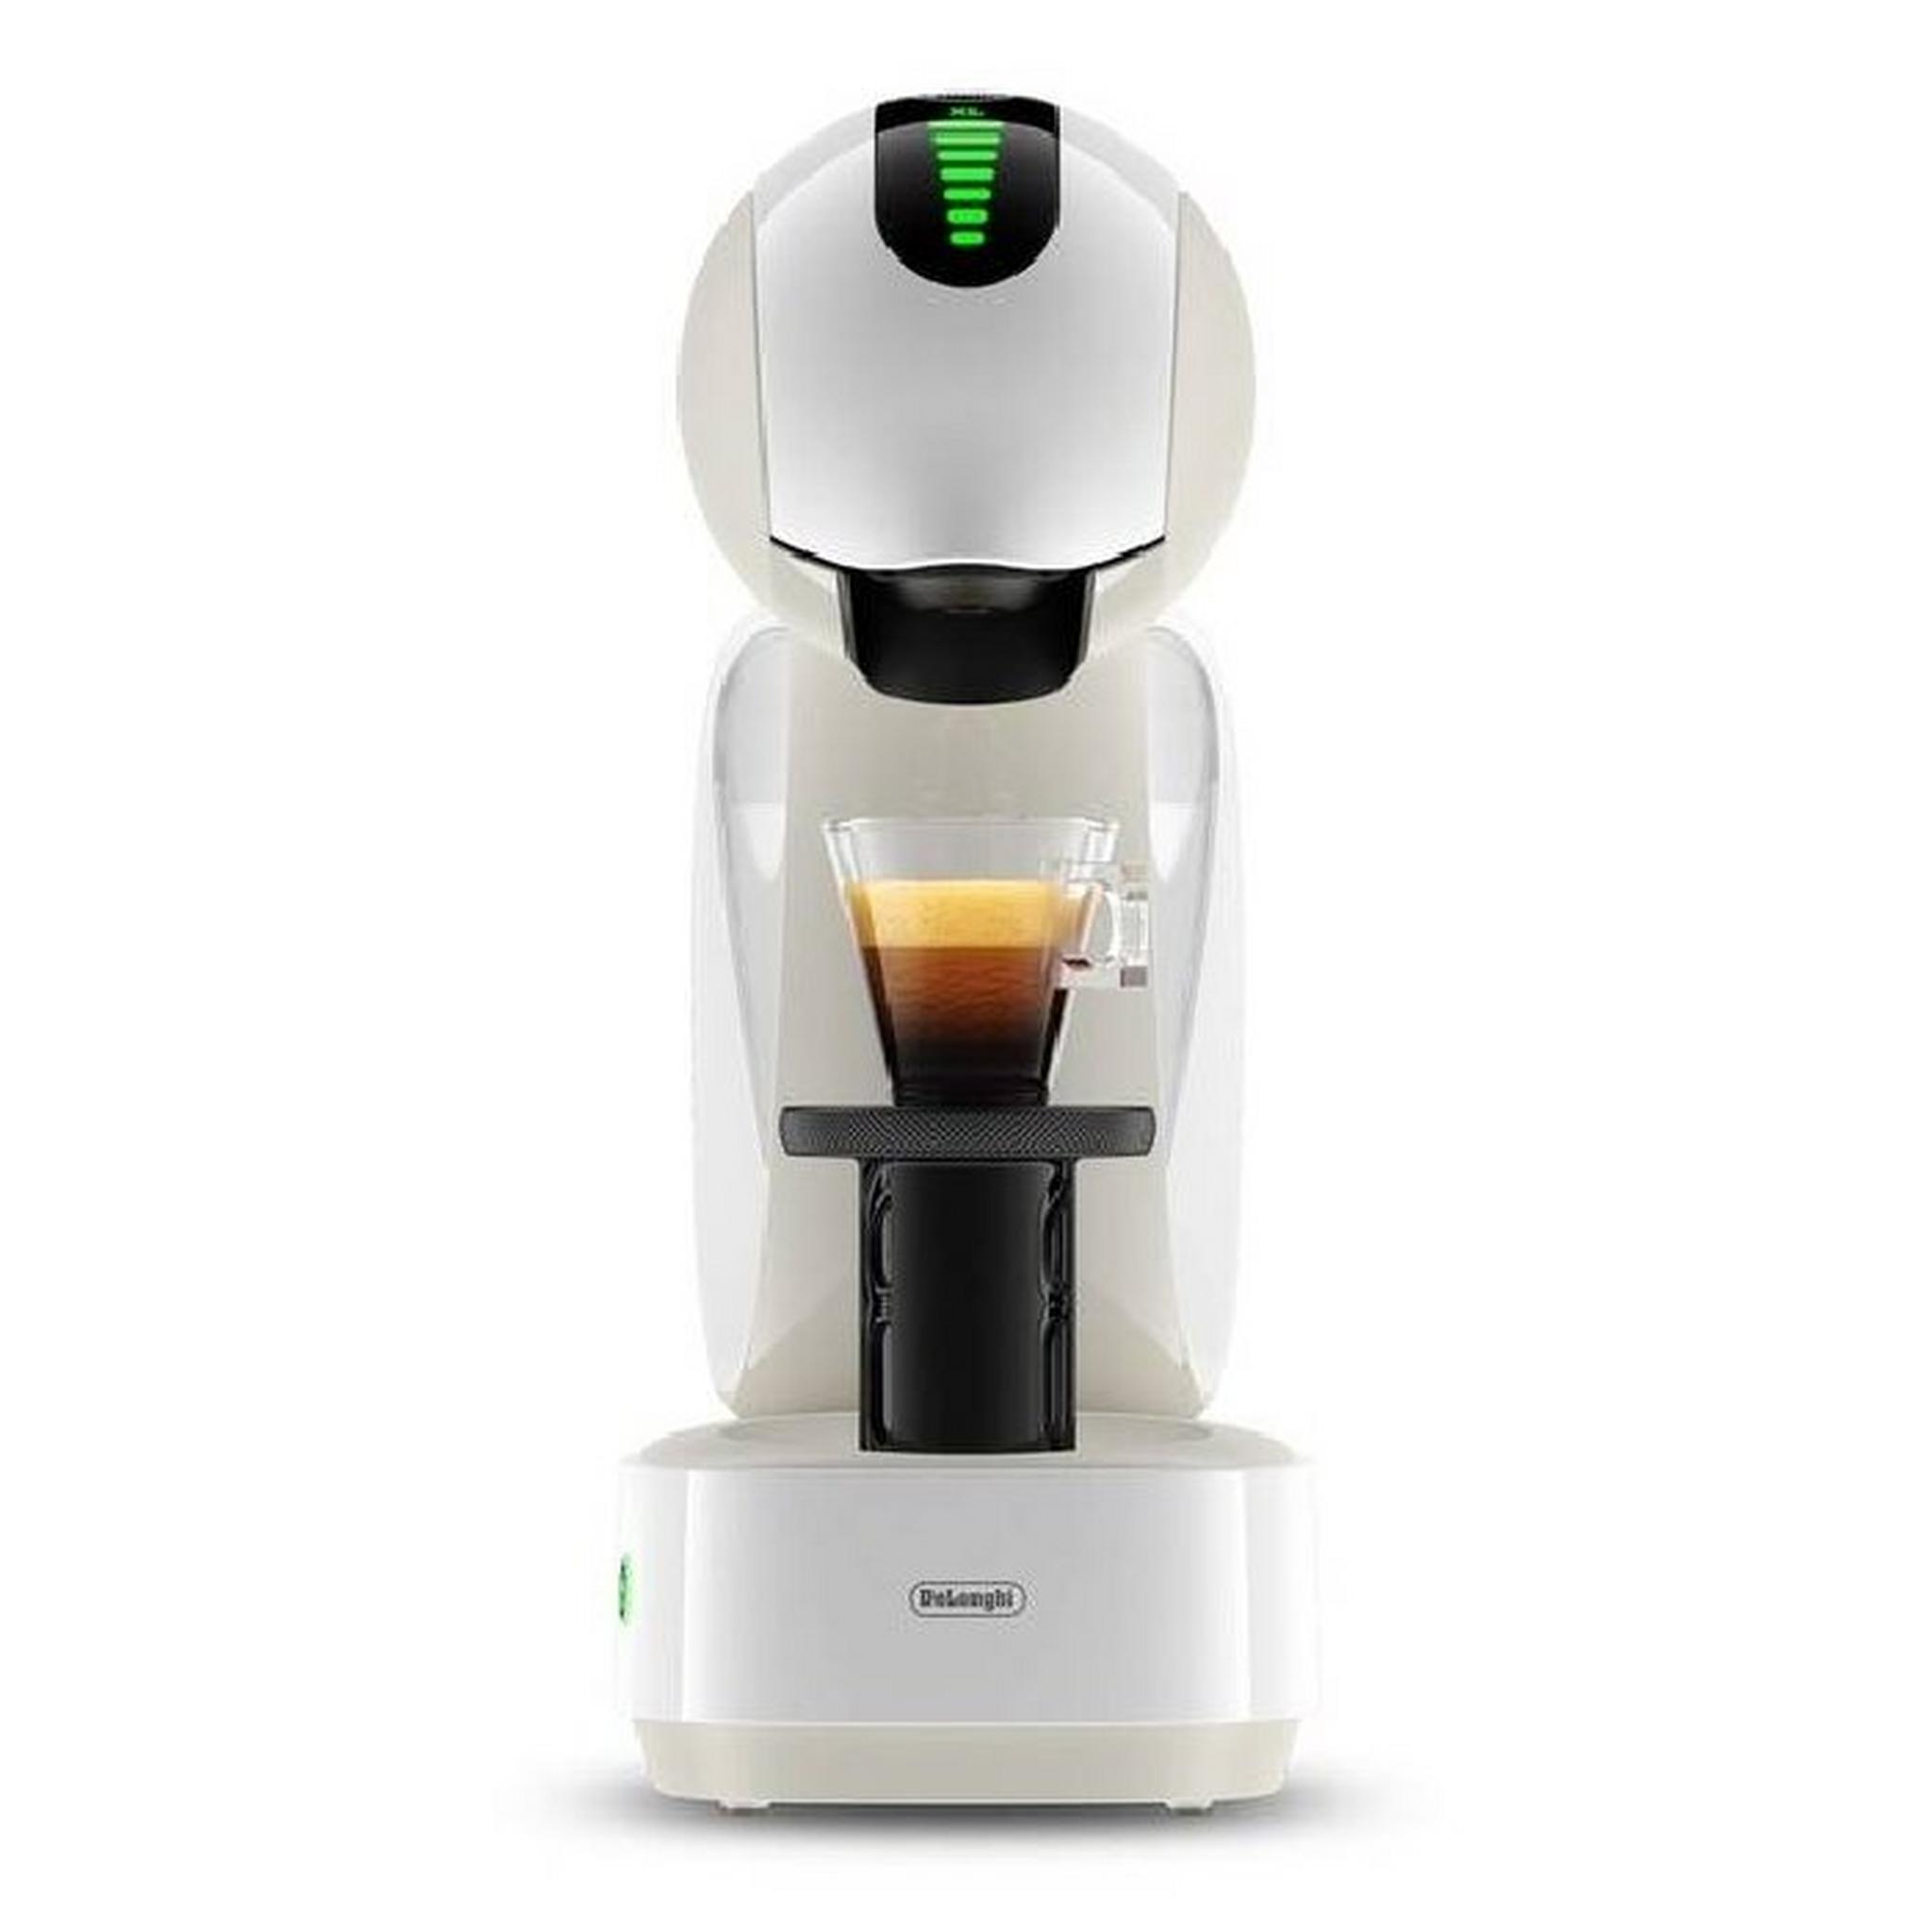 ماكينة تحضير القهوة إنفينيسيما ديلونجي دولتشي قوستو، قدرة 1500 واط، سعة 1.2 لتر، EDG268.W - أبيض